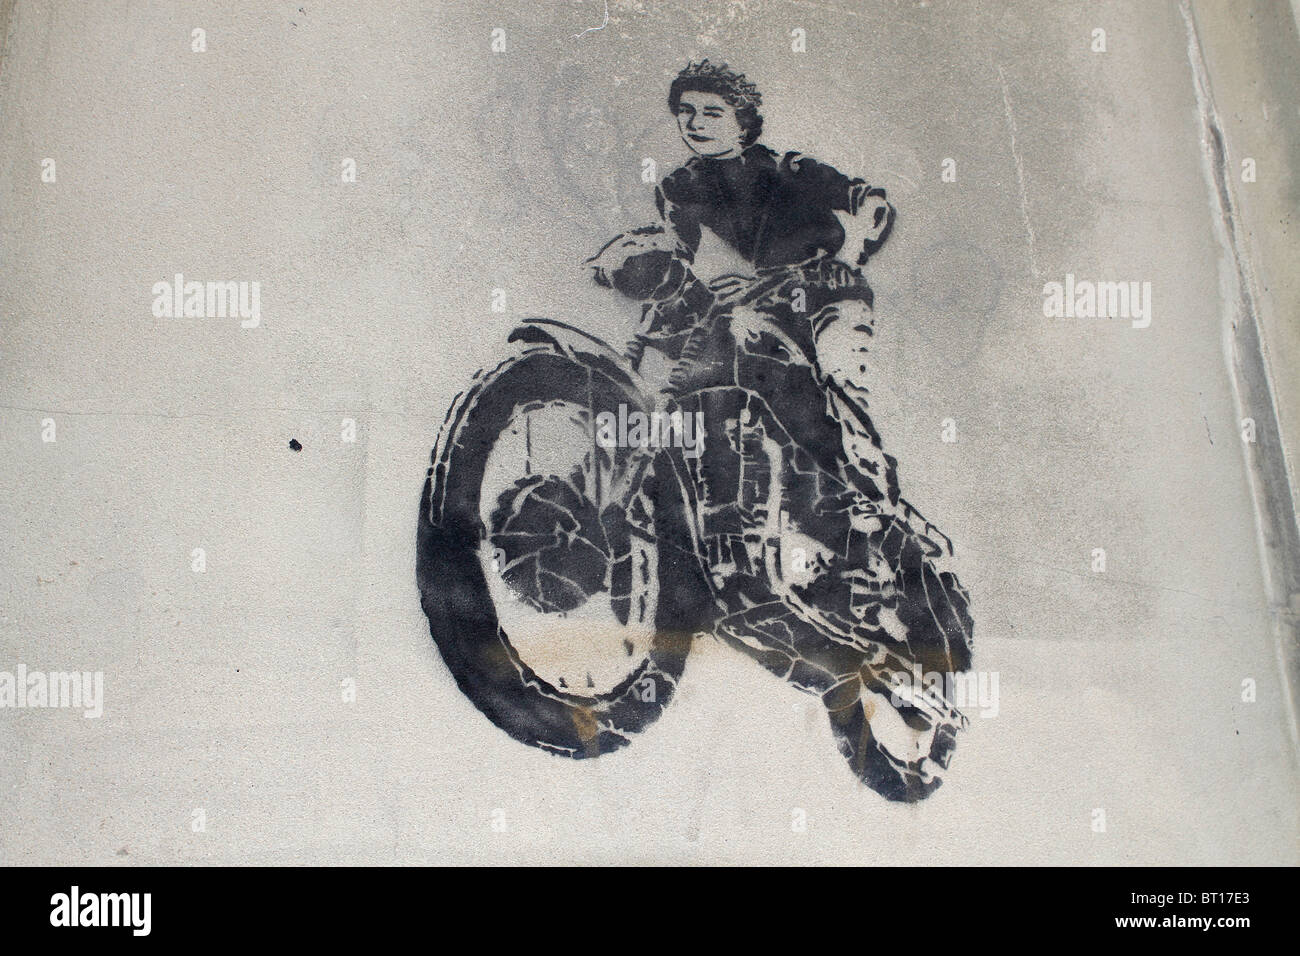 McQueen stencil greffiti, Queen Elizabeth 2nd motorbike jump from the great escape movie, street art London, UK Stock Photo